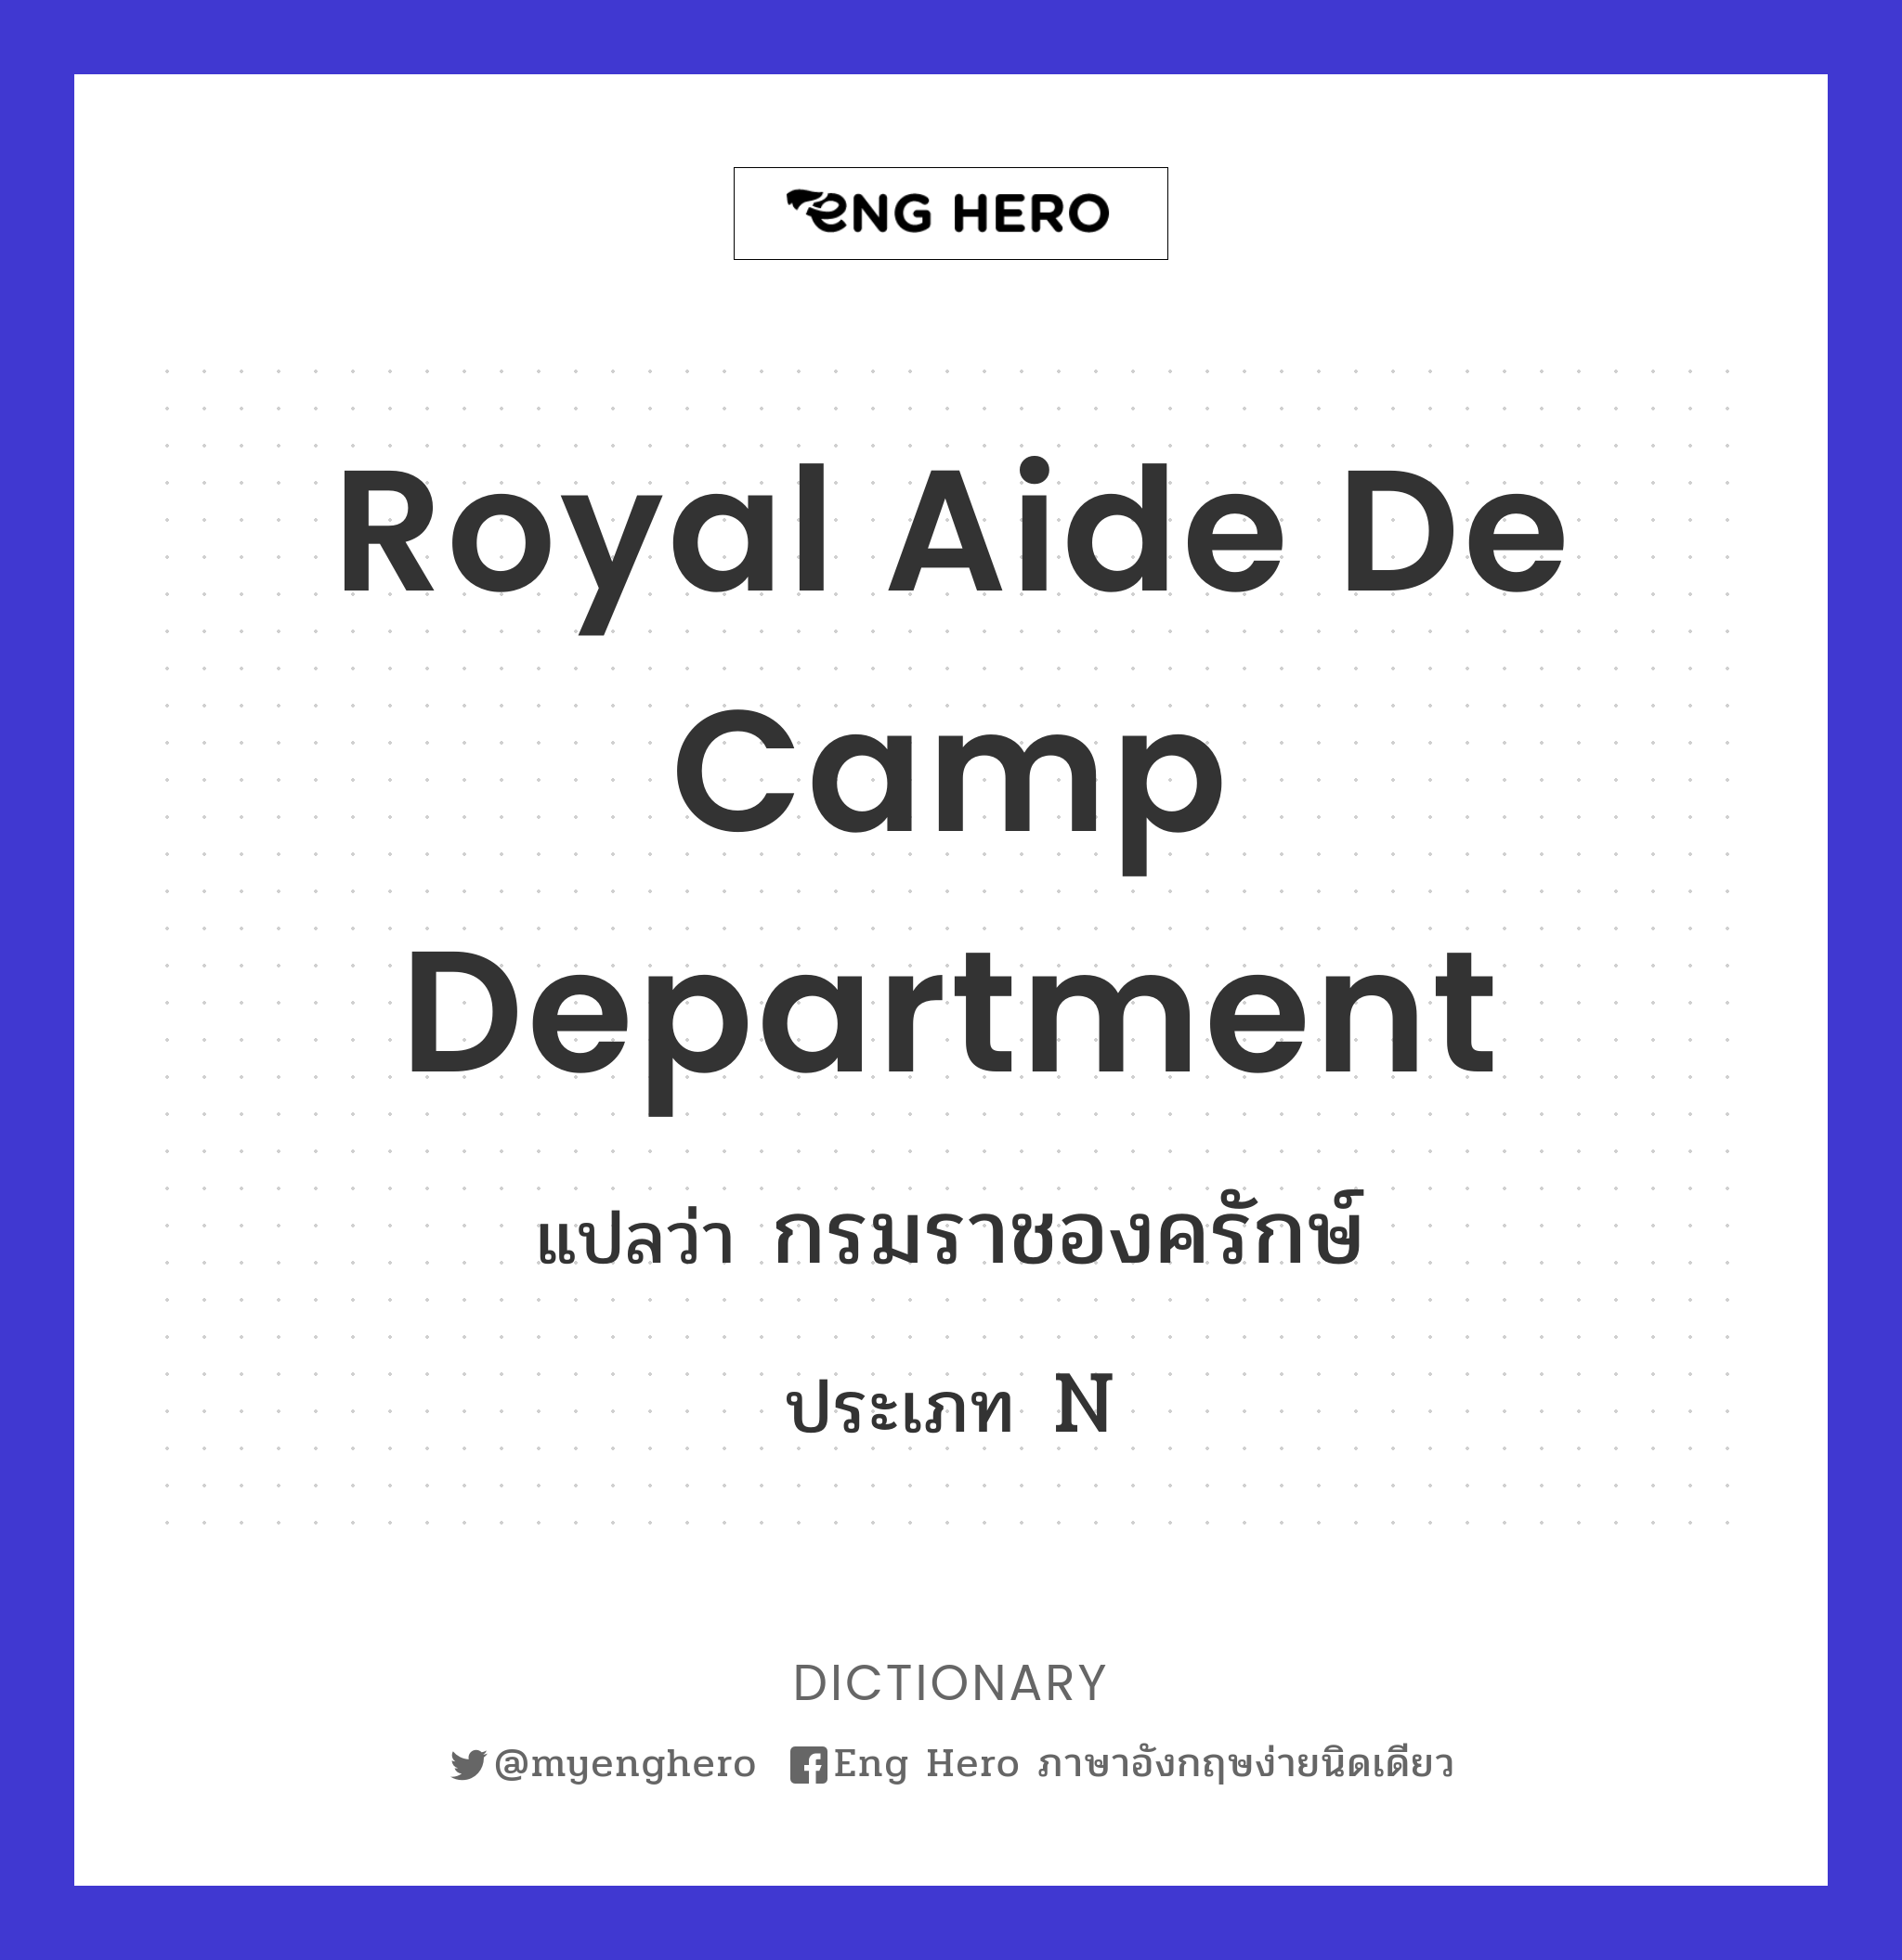 Royal Aide de Camp Department